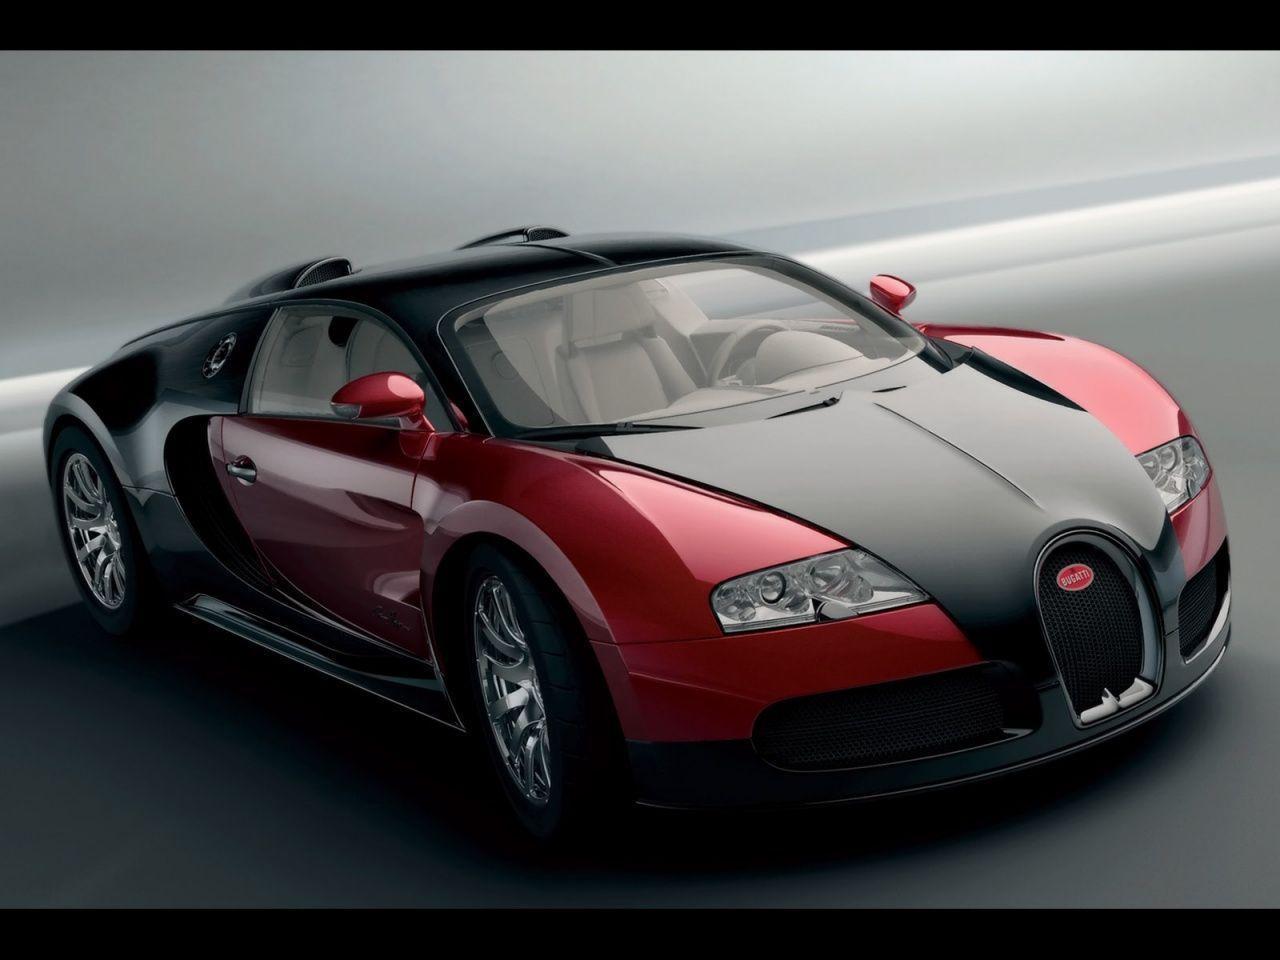 Bugatti Veyron Wallpaper. hdwallpaper